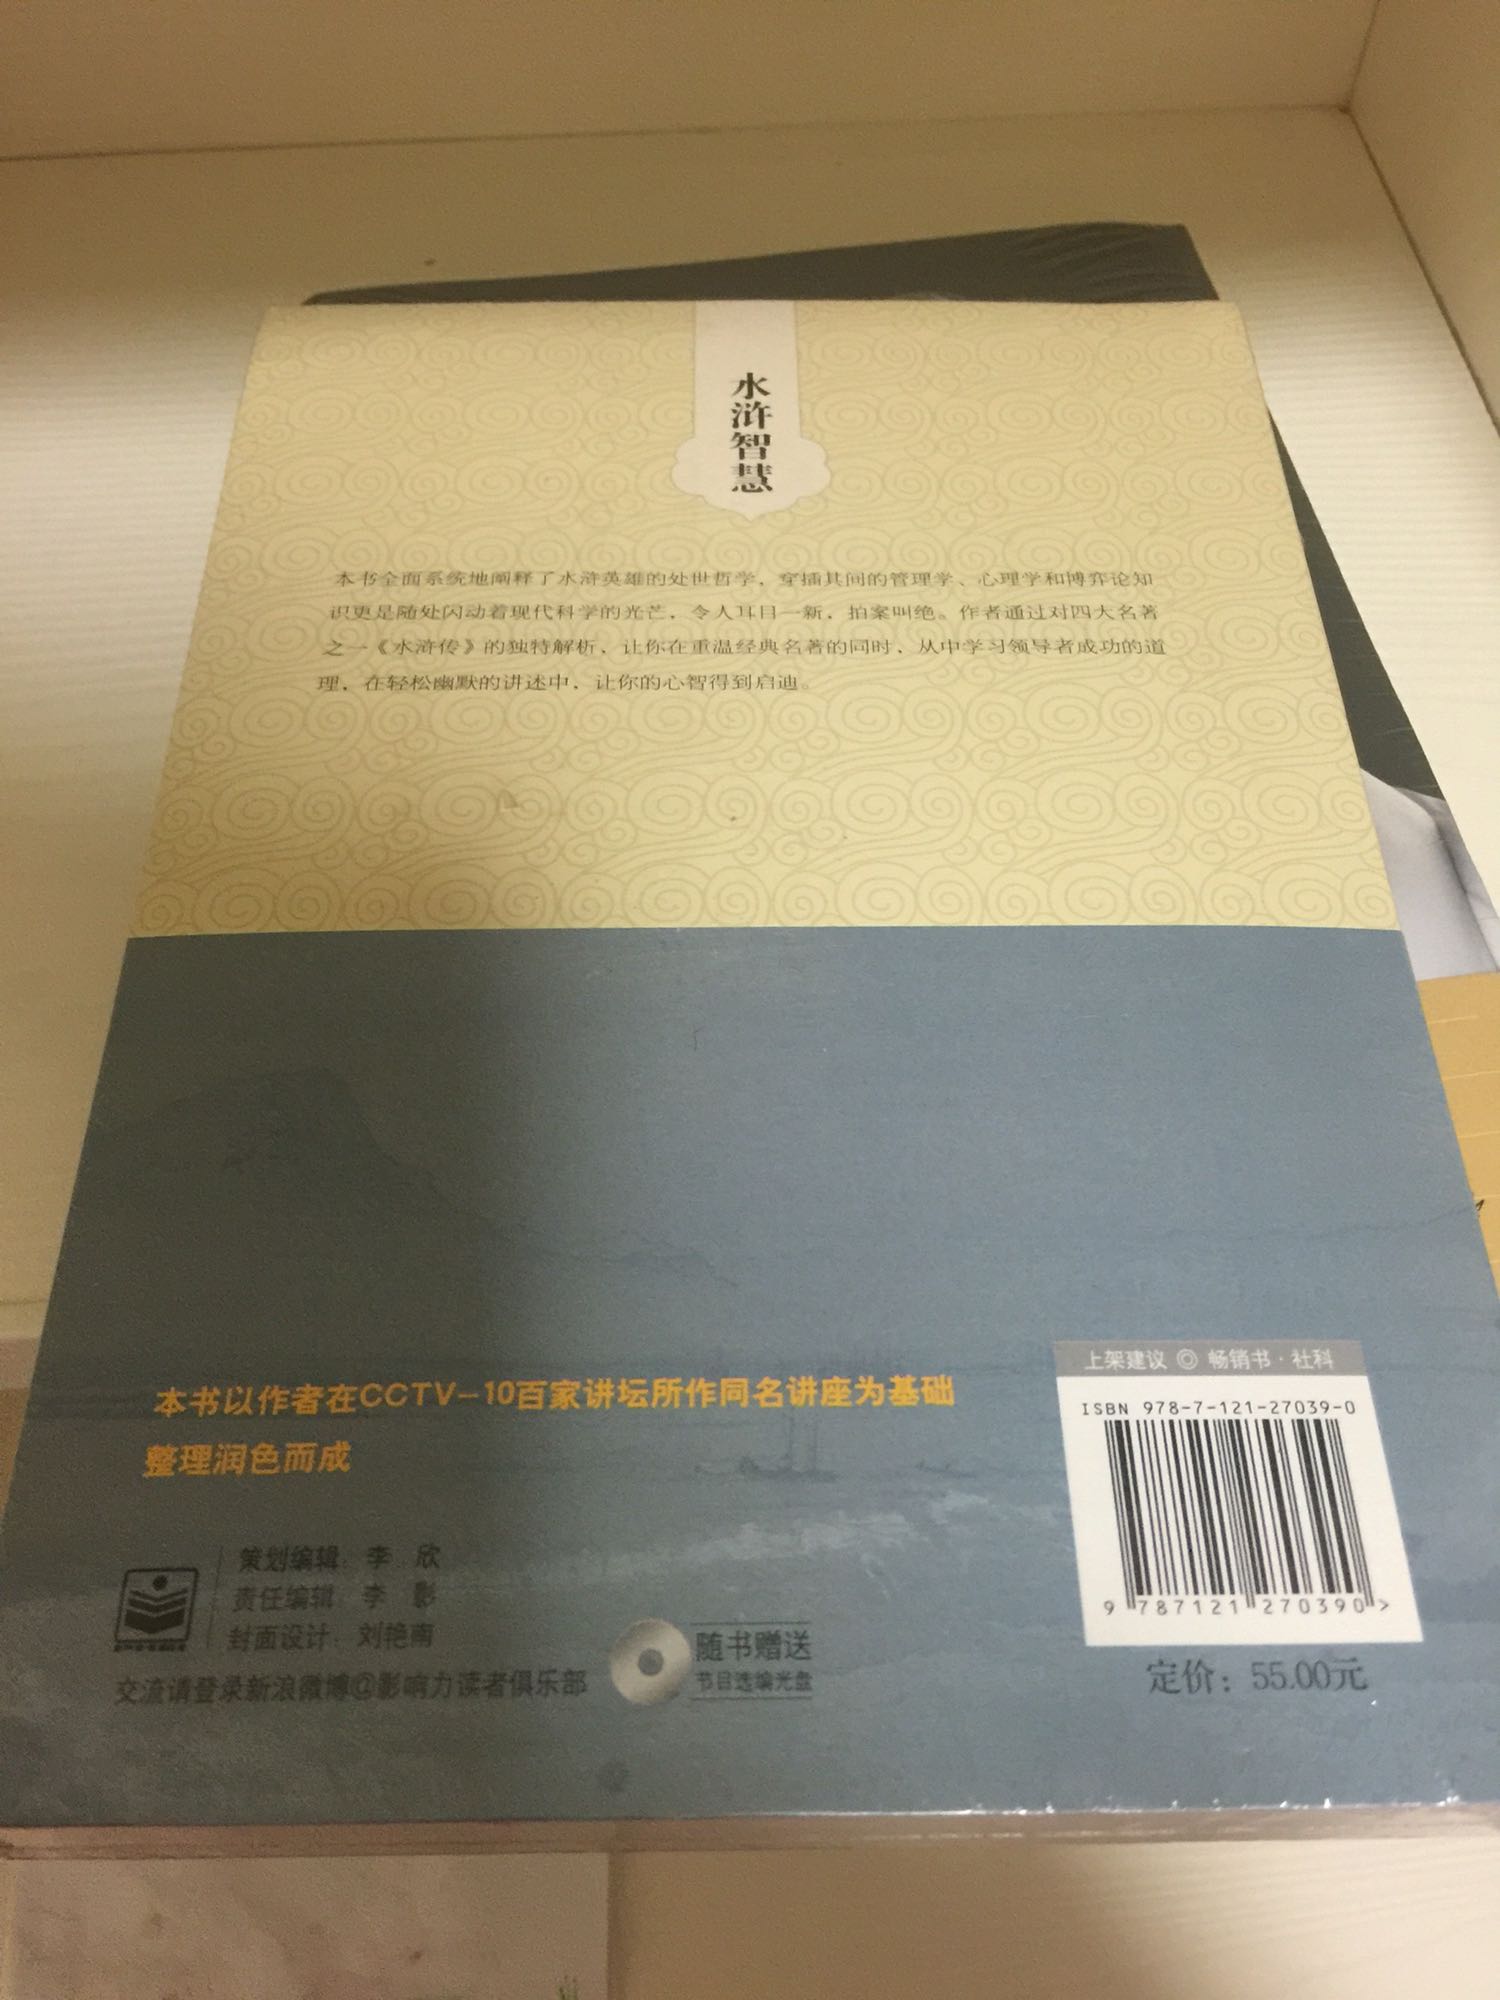 朋友介绍赵玉平的书，我还木有看，希望能帮到我